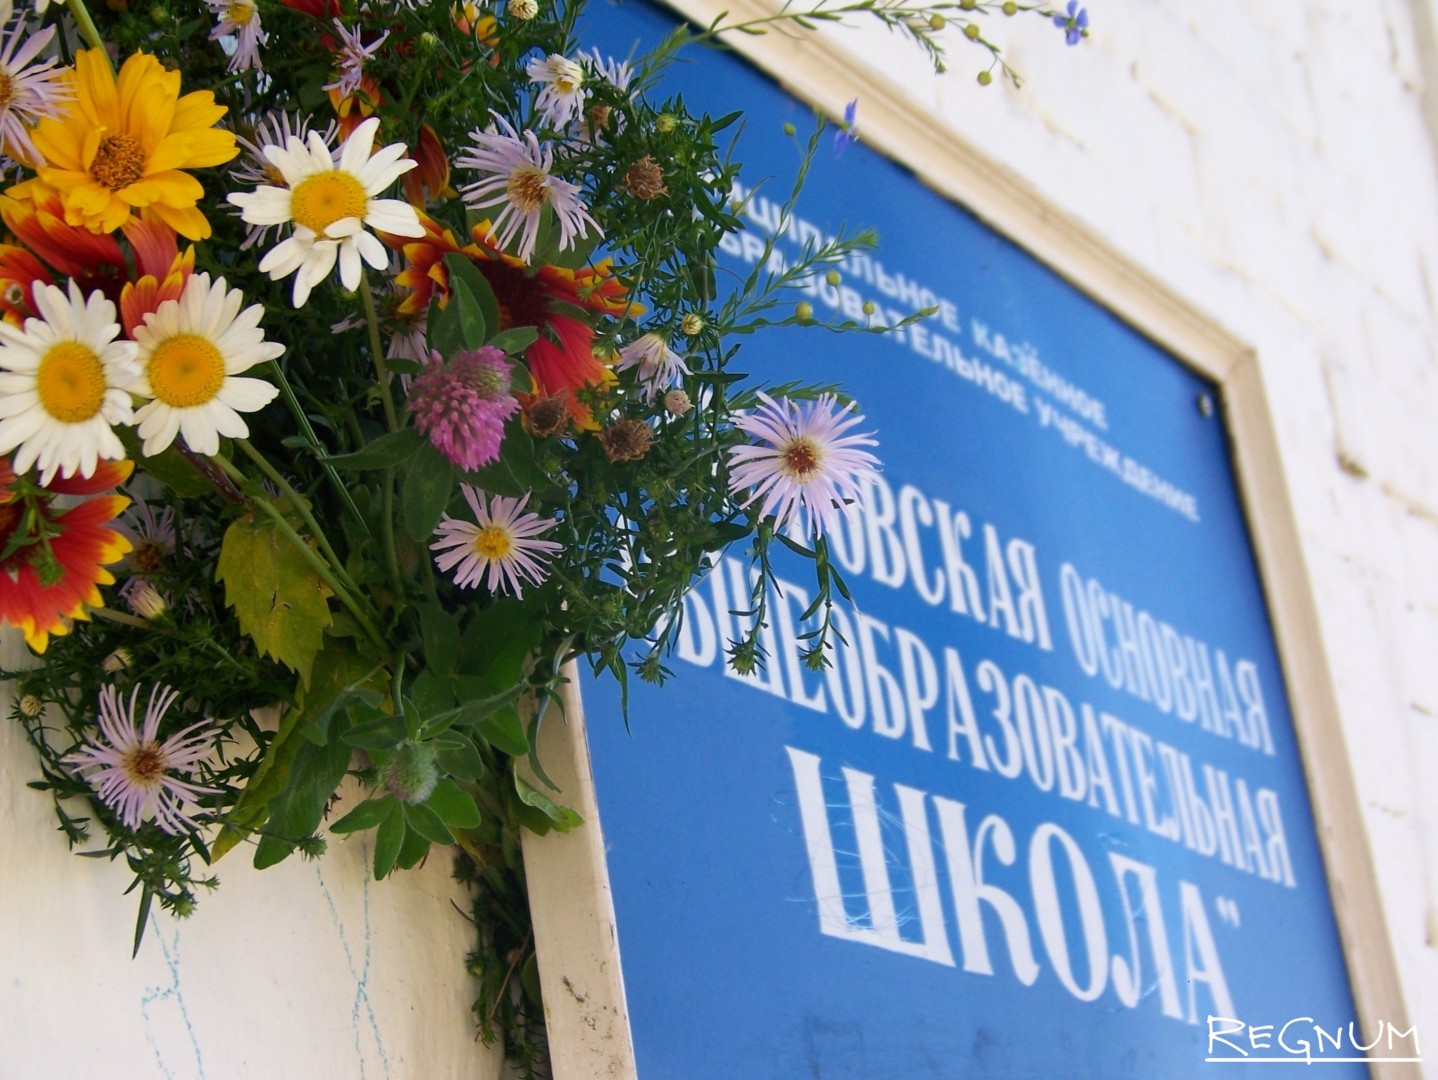 Школа в селе Батурово в День знаний осталась без учеников. Но кто-то принес и прикпепил букет цветов — в память о нй